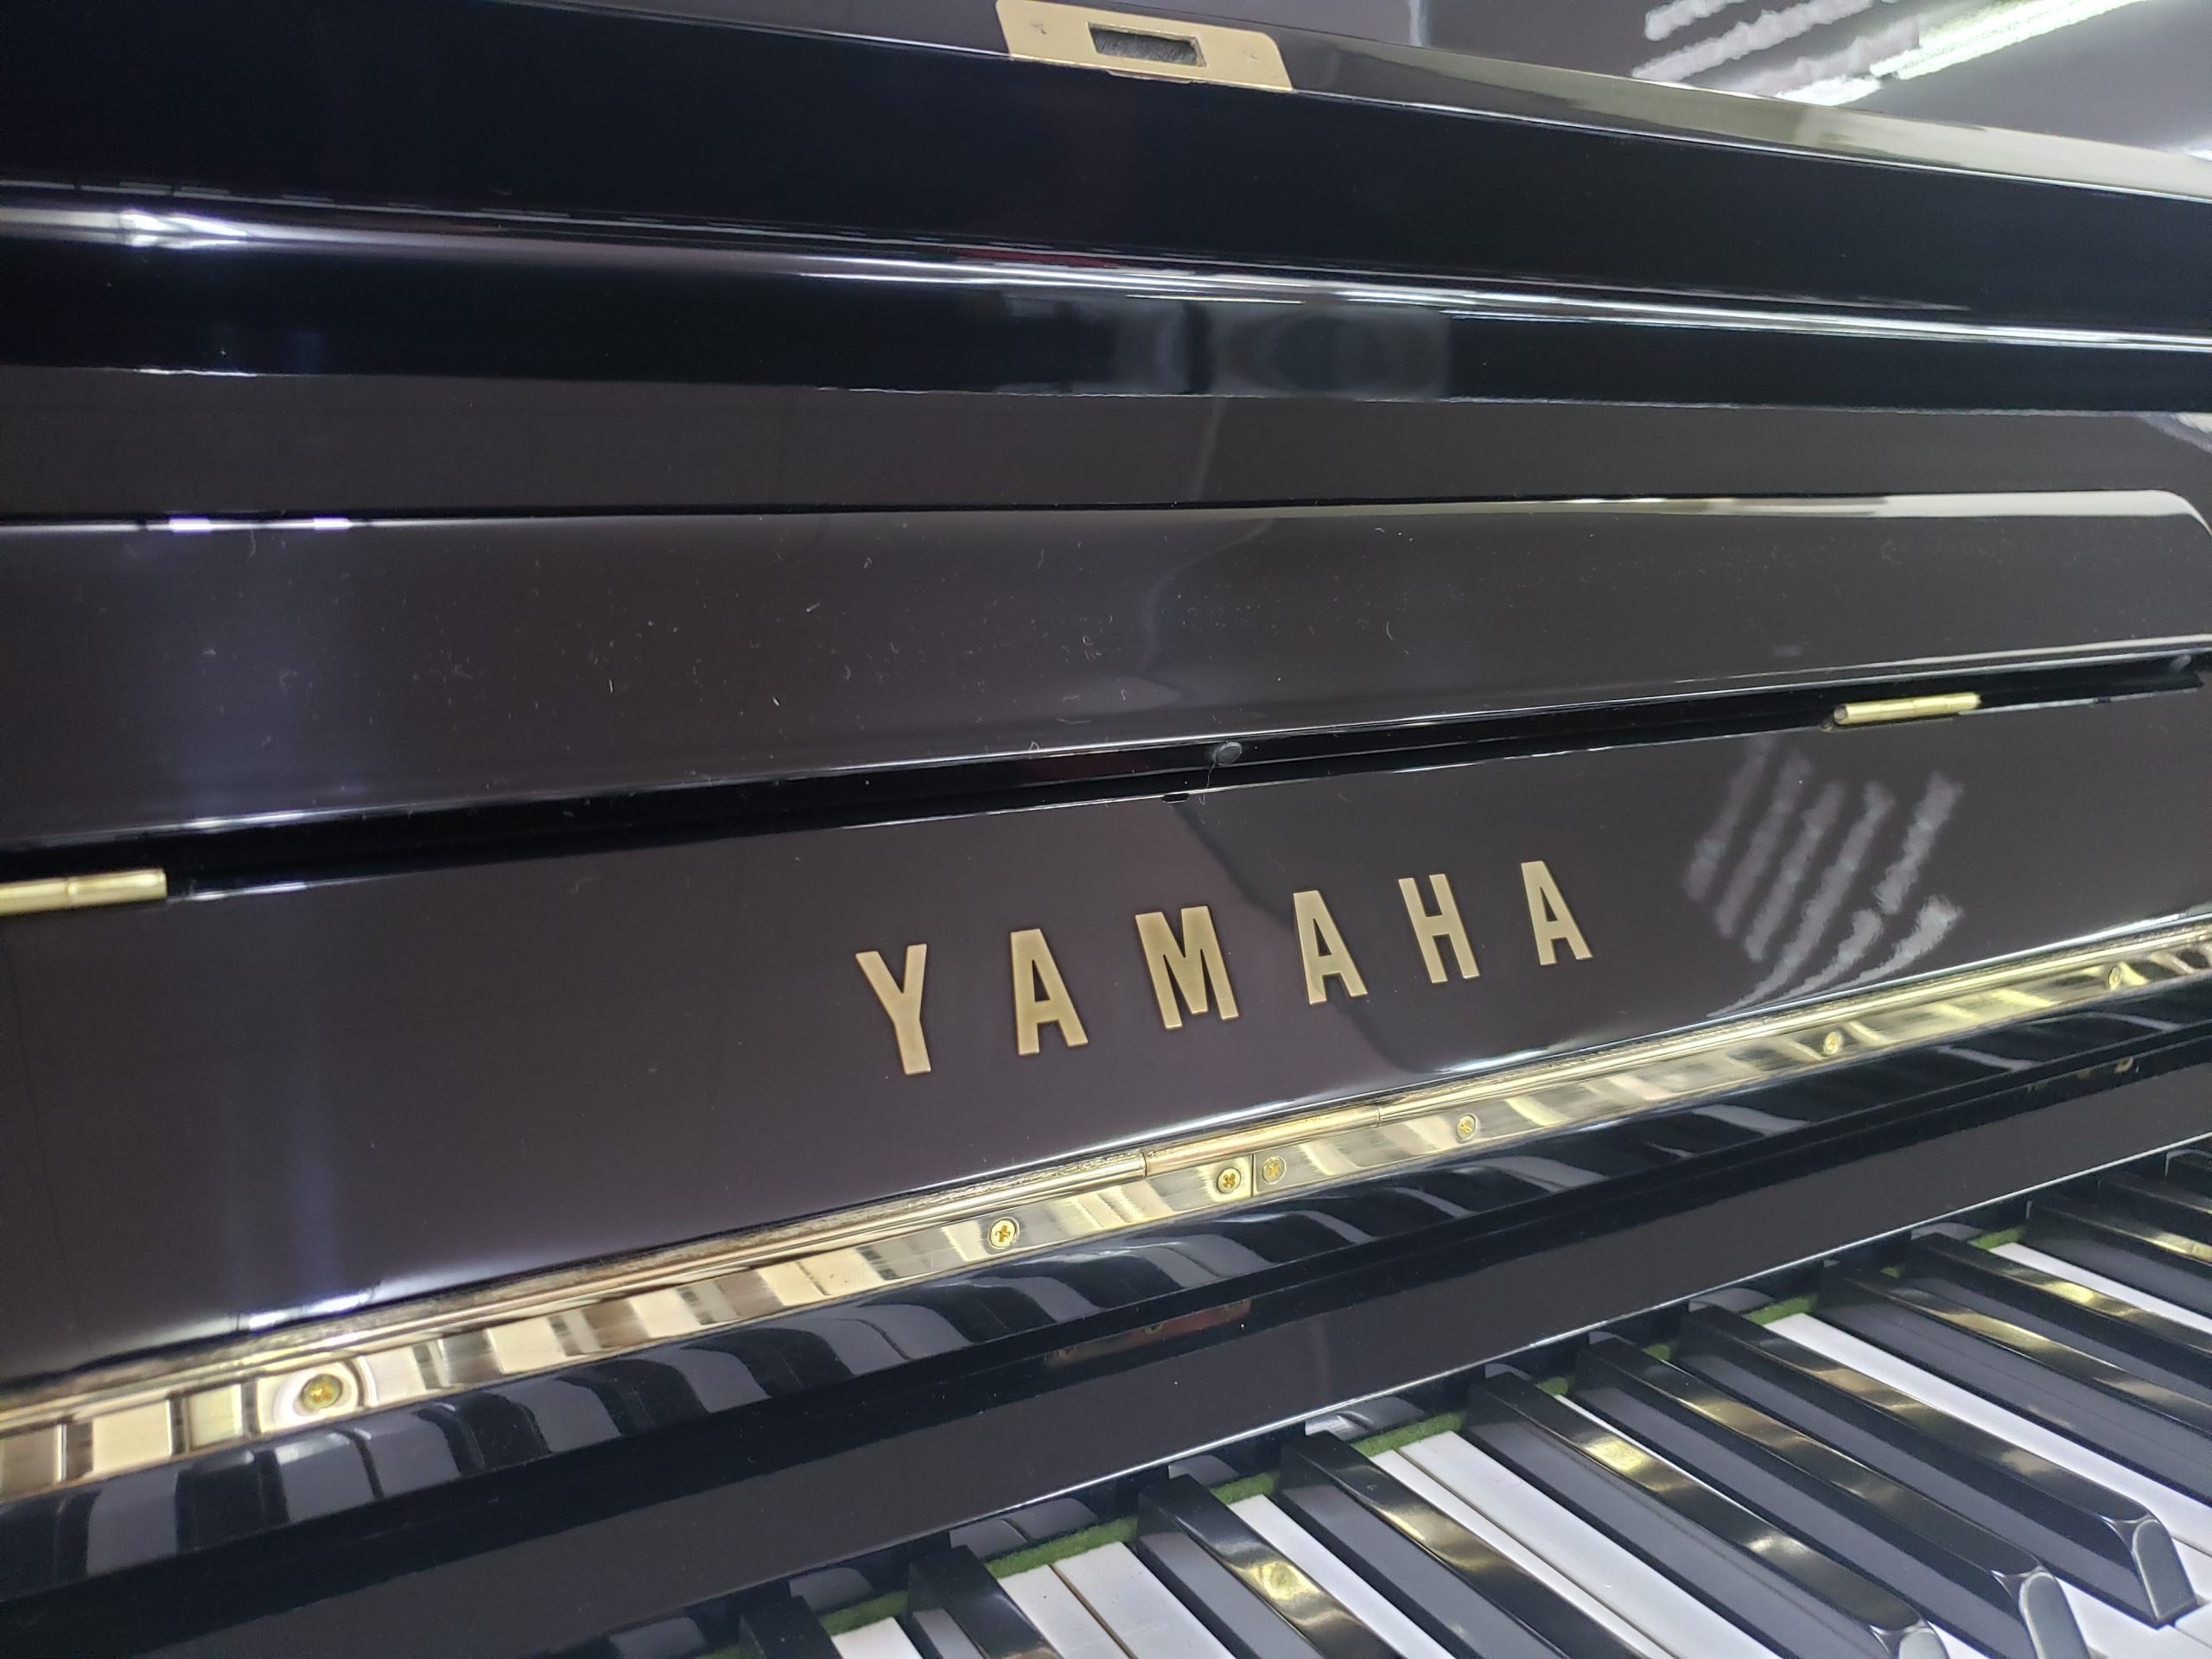 ヤマハ中古アップライトピアノ YAMAHA U2H